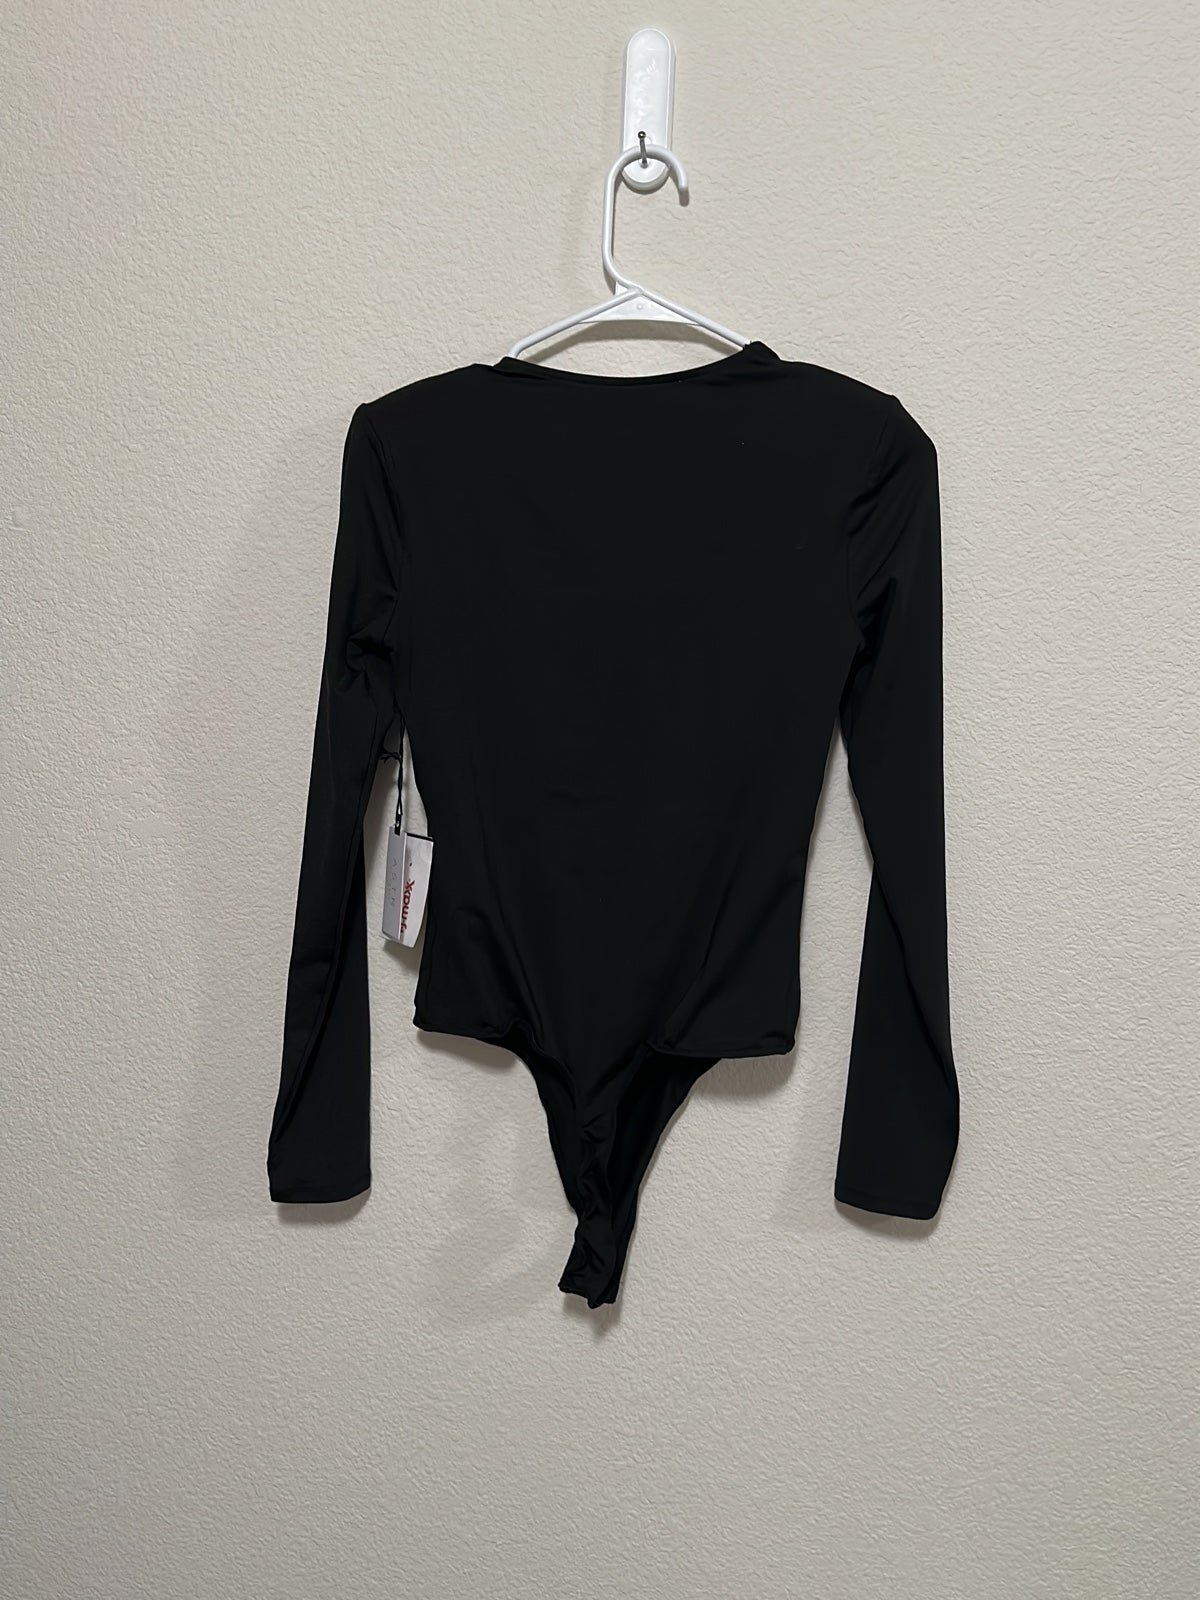 Affordable Black Bodysuit l59Lbr8A2 Wholesale